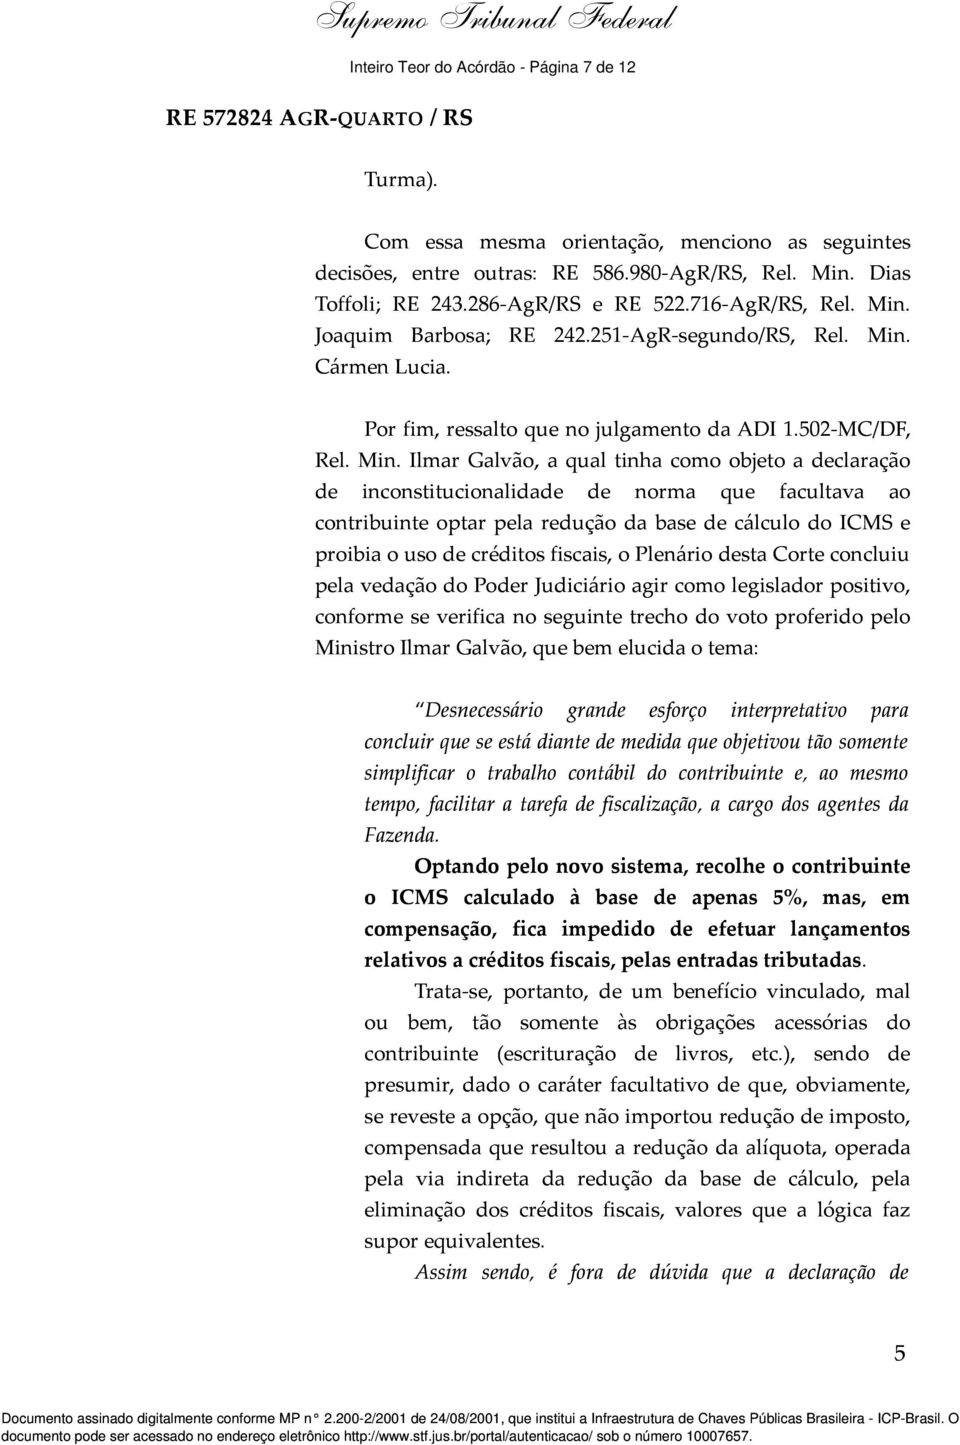 Joaquim Barbosa; RE 242.251-AgR-segundo/RS, Rel. Min.